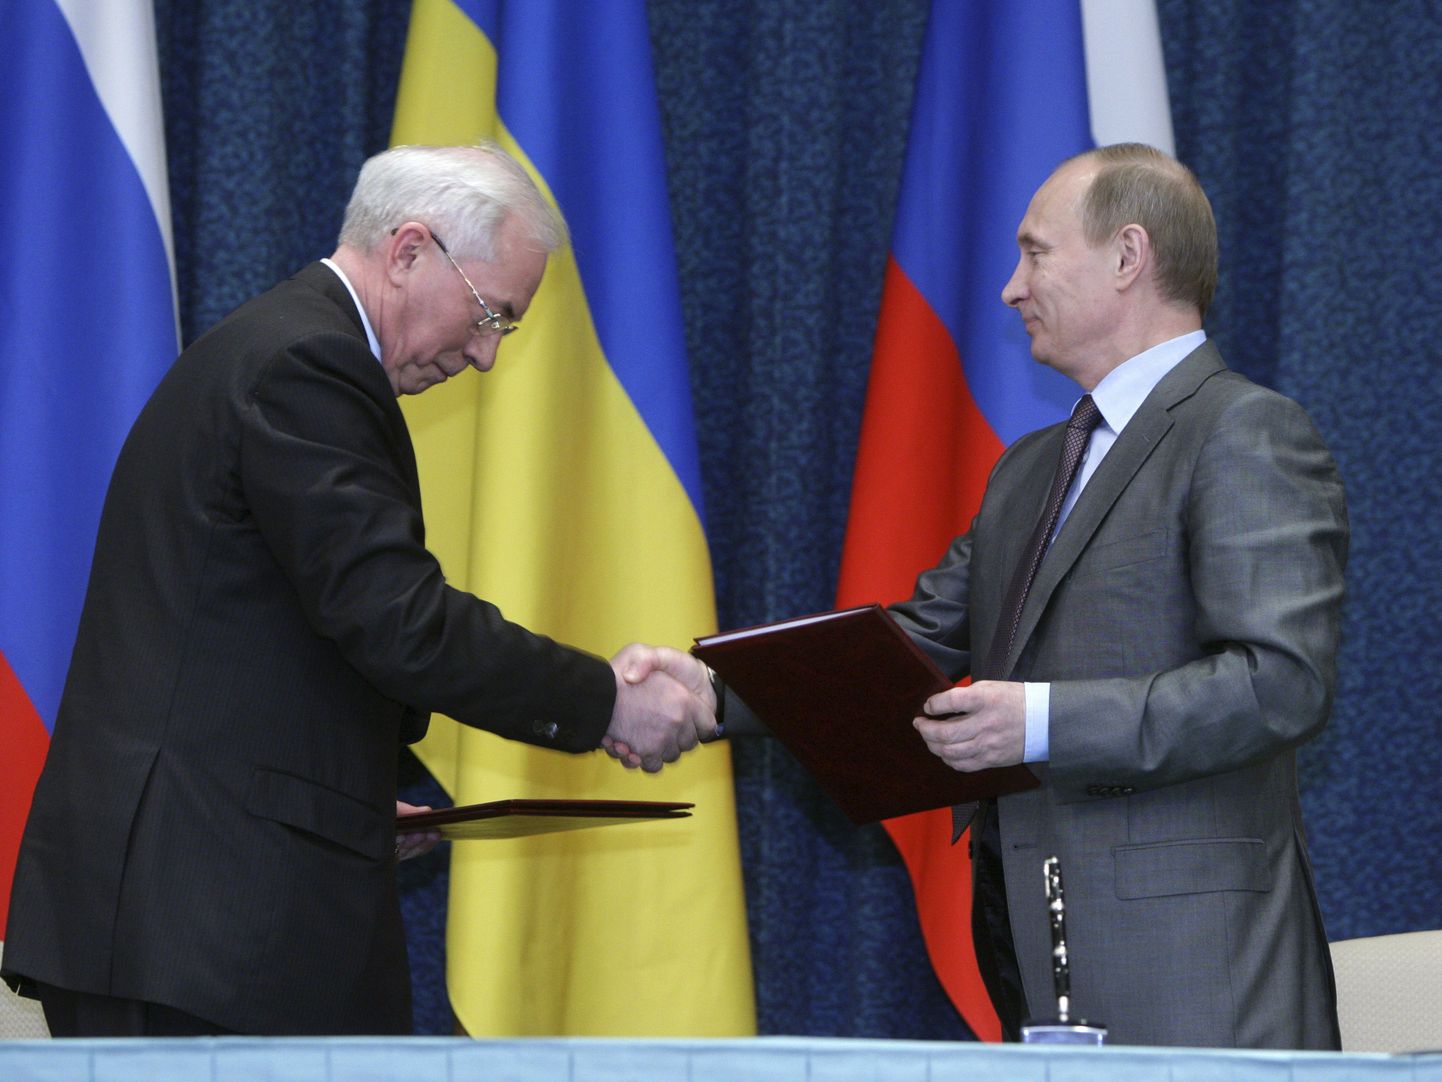 Venemaa peaminister Vladimir Putin ja tema Ukraina ametivend Mykola Azarov lepinguid vahetamas.